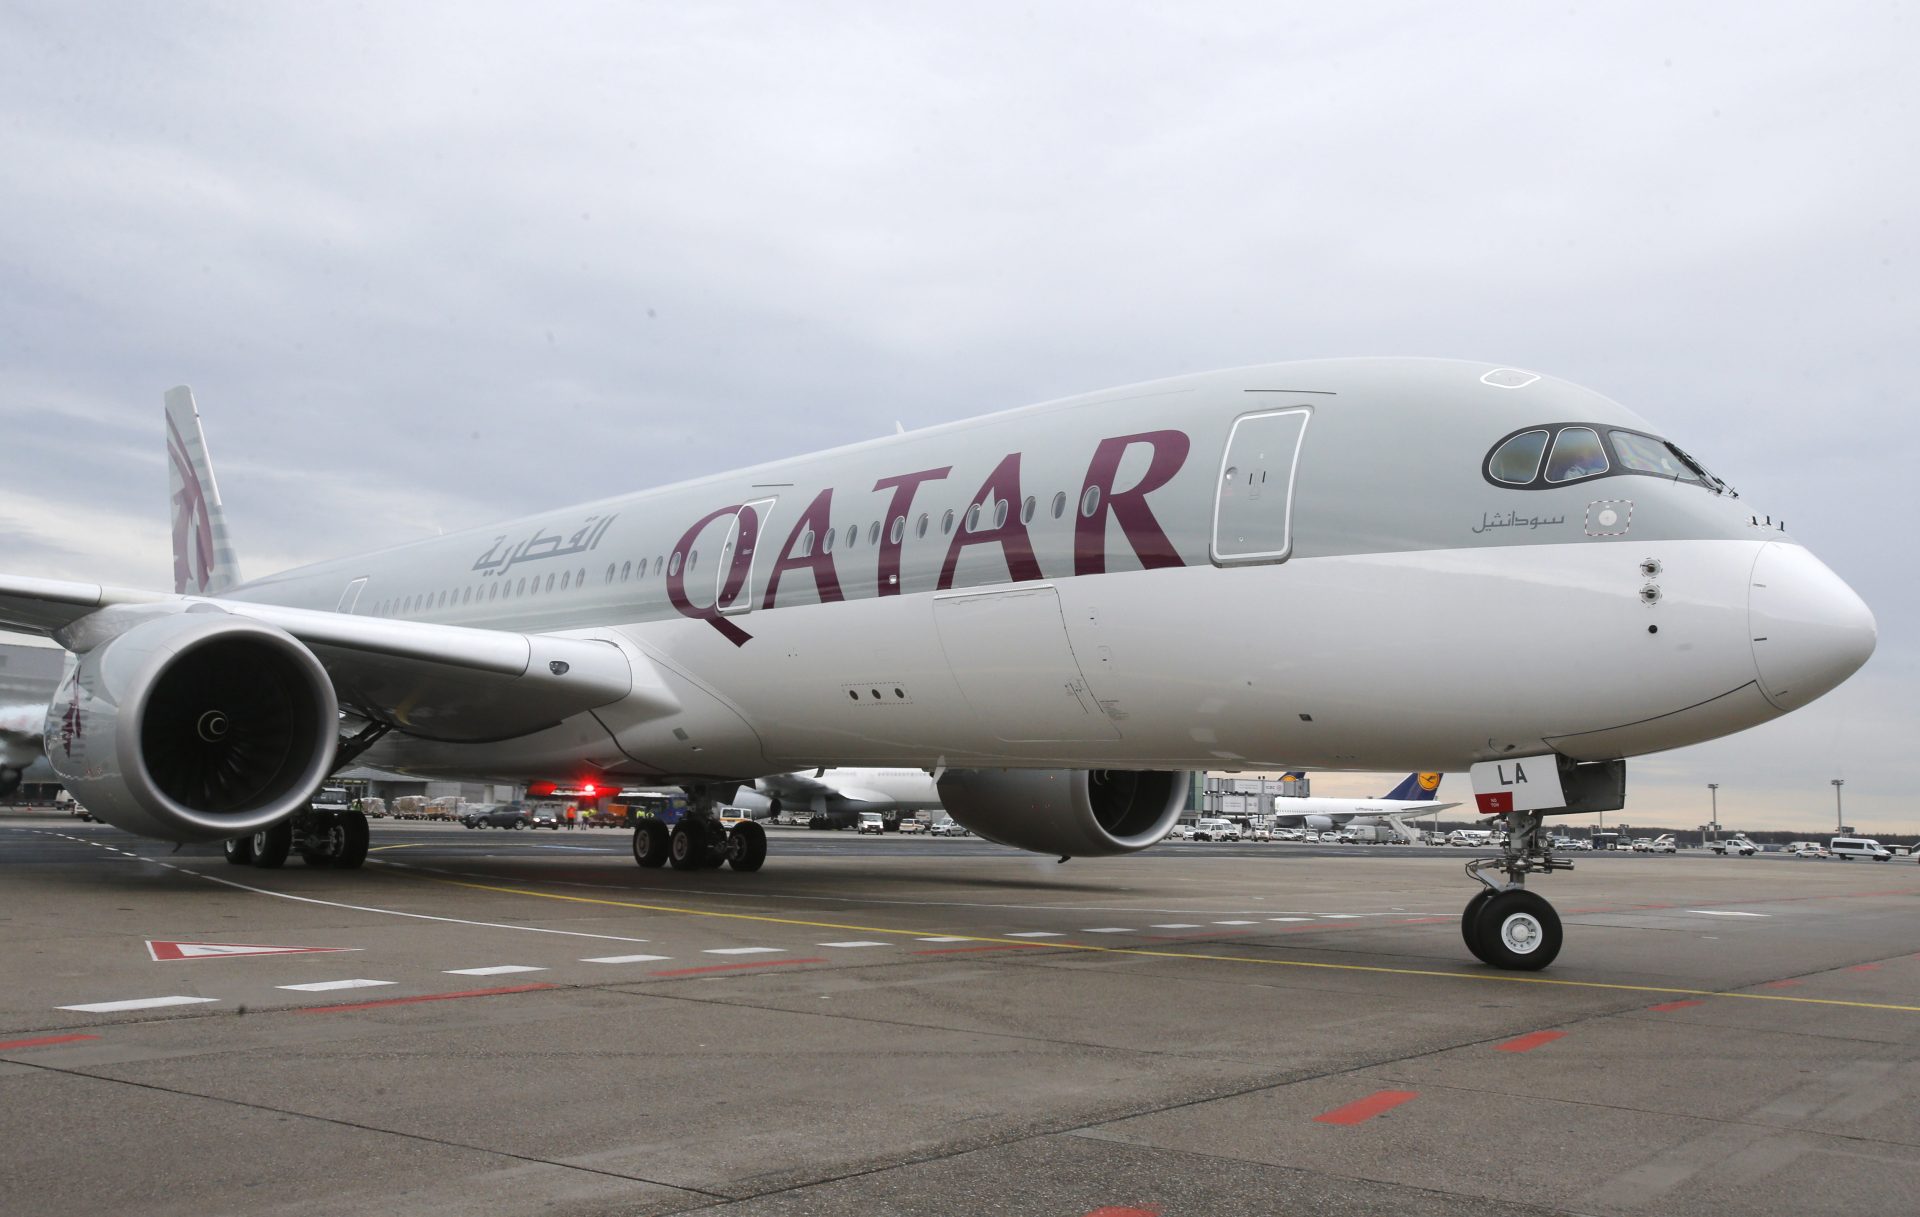 Recours des Australiennes contre Qatar Airways pour fouilles 2020 rejeté